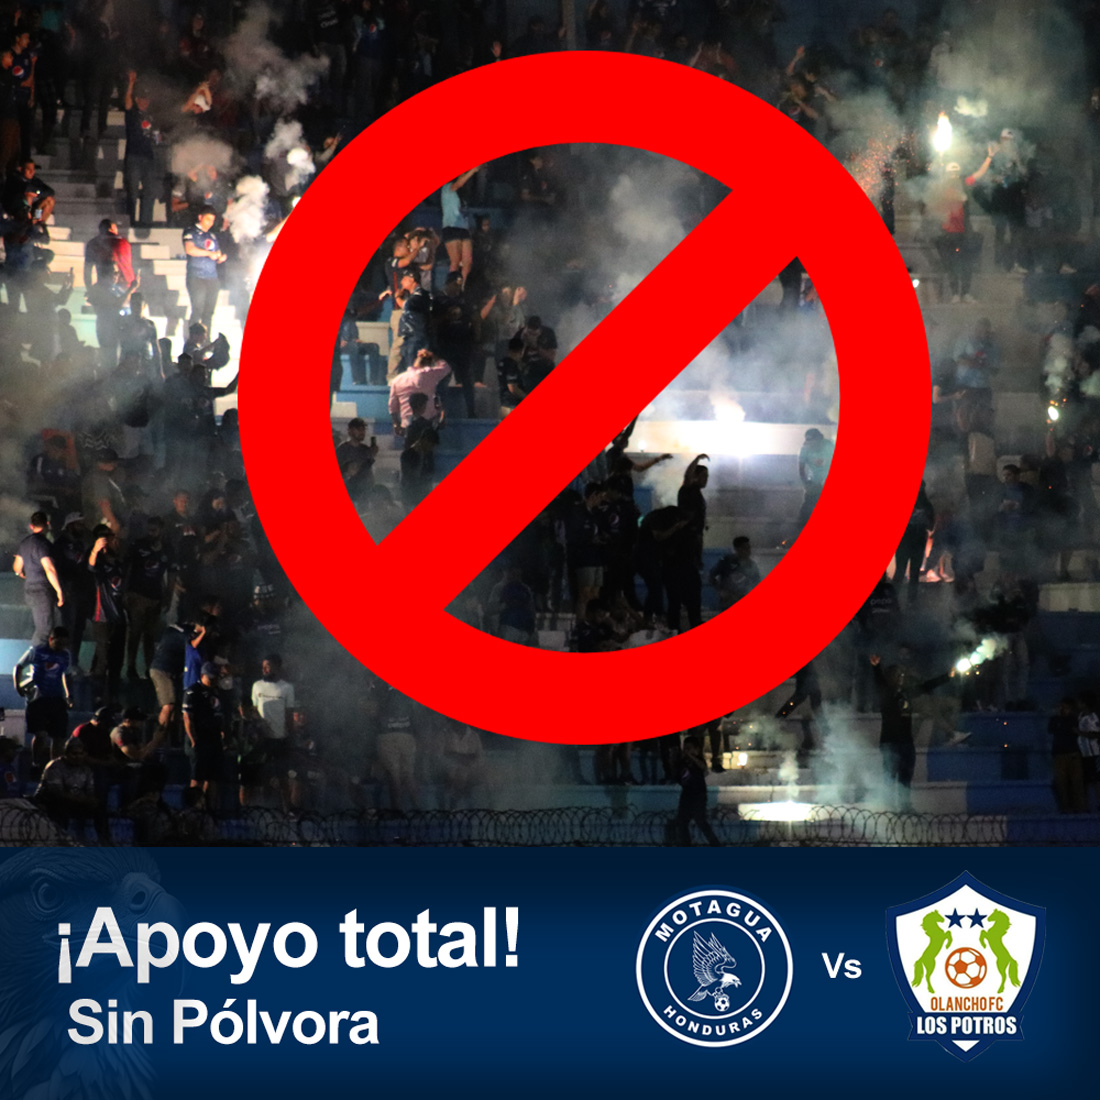 La directiva de Motagua tiene la campaña de cero pólvora, pues el equipo ya fue multado por la Concacaf.